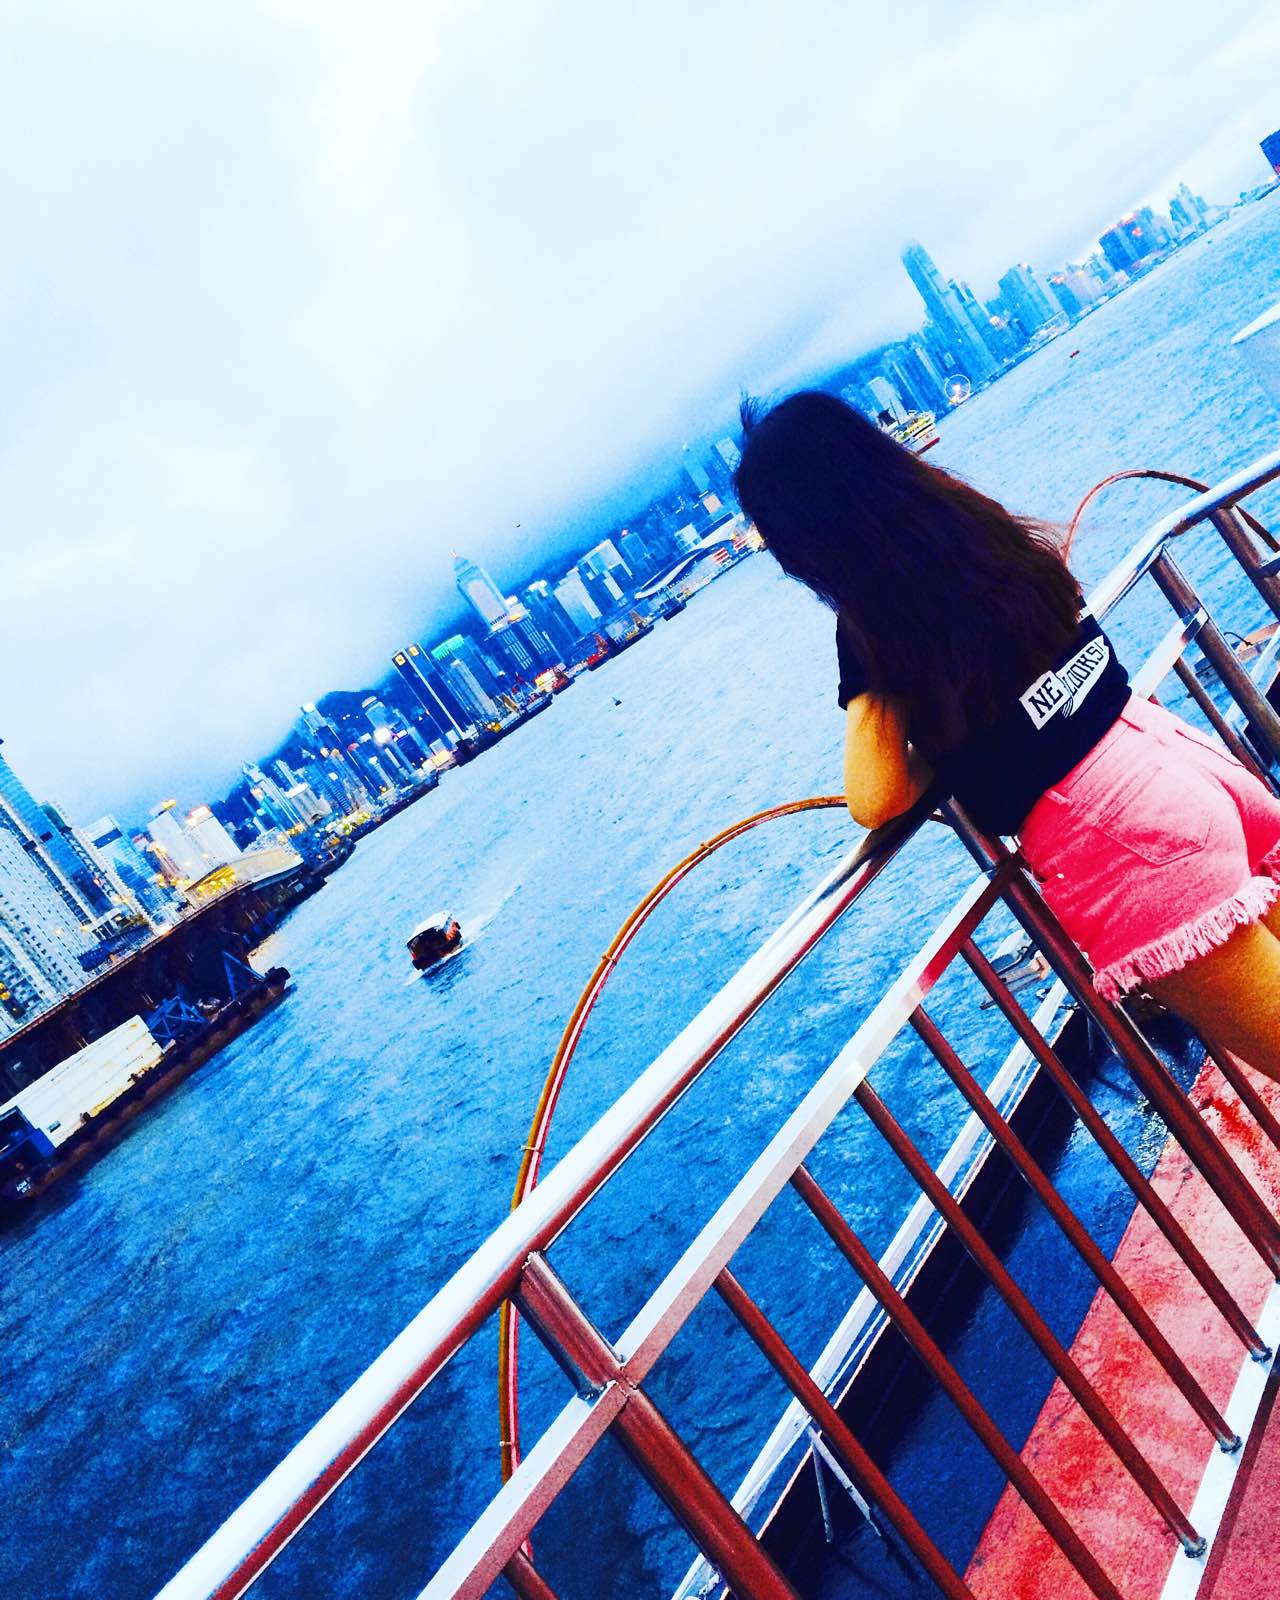 在船上边看维港风景边吃自助餐，简直不要太惬意，还有歪果仁在唱歌，唱的超